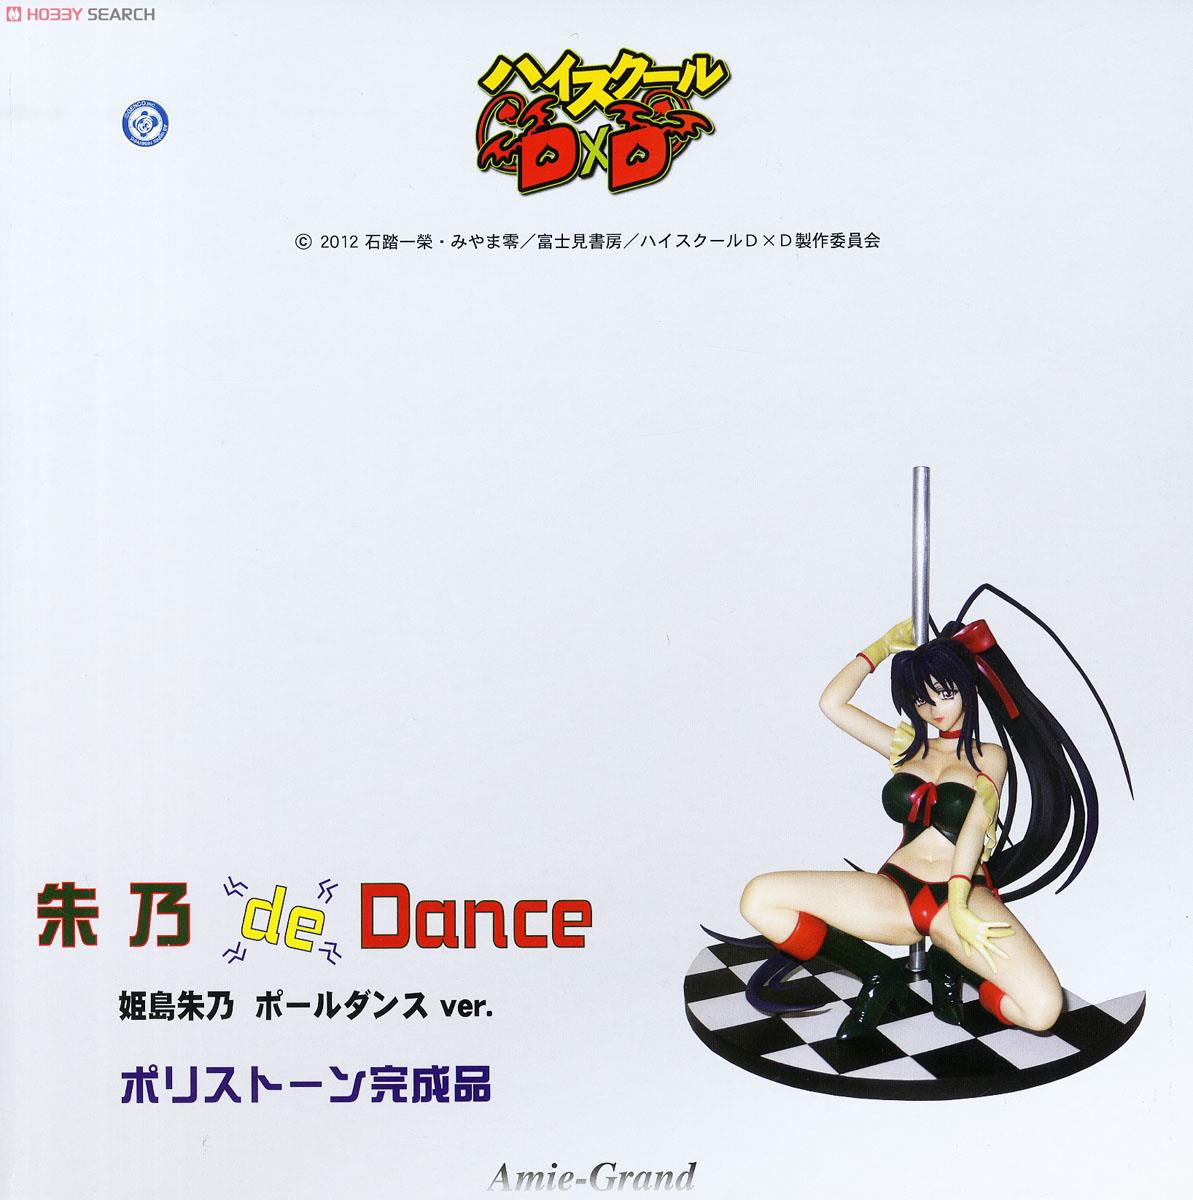 朱乃 de Dance (姫島朱乃 ポールダンスver.) (フィギュア) パッケージ1